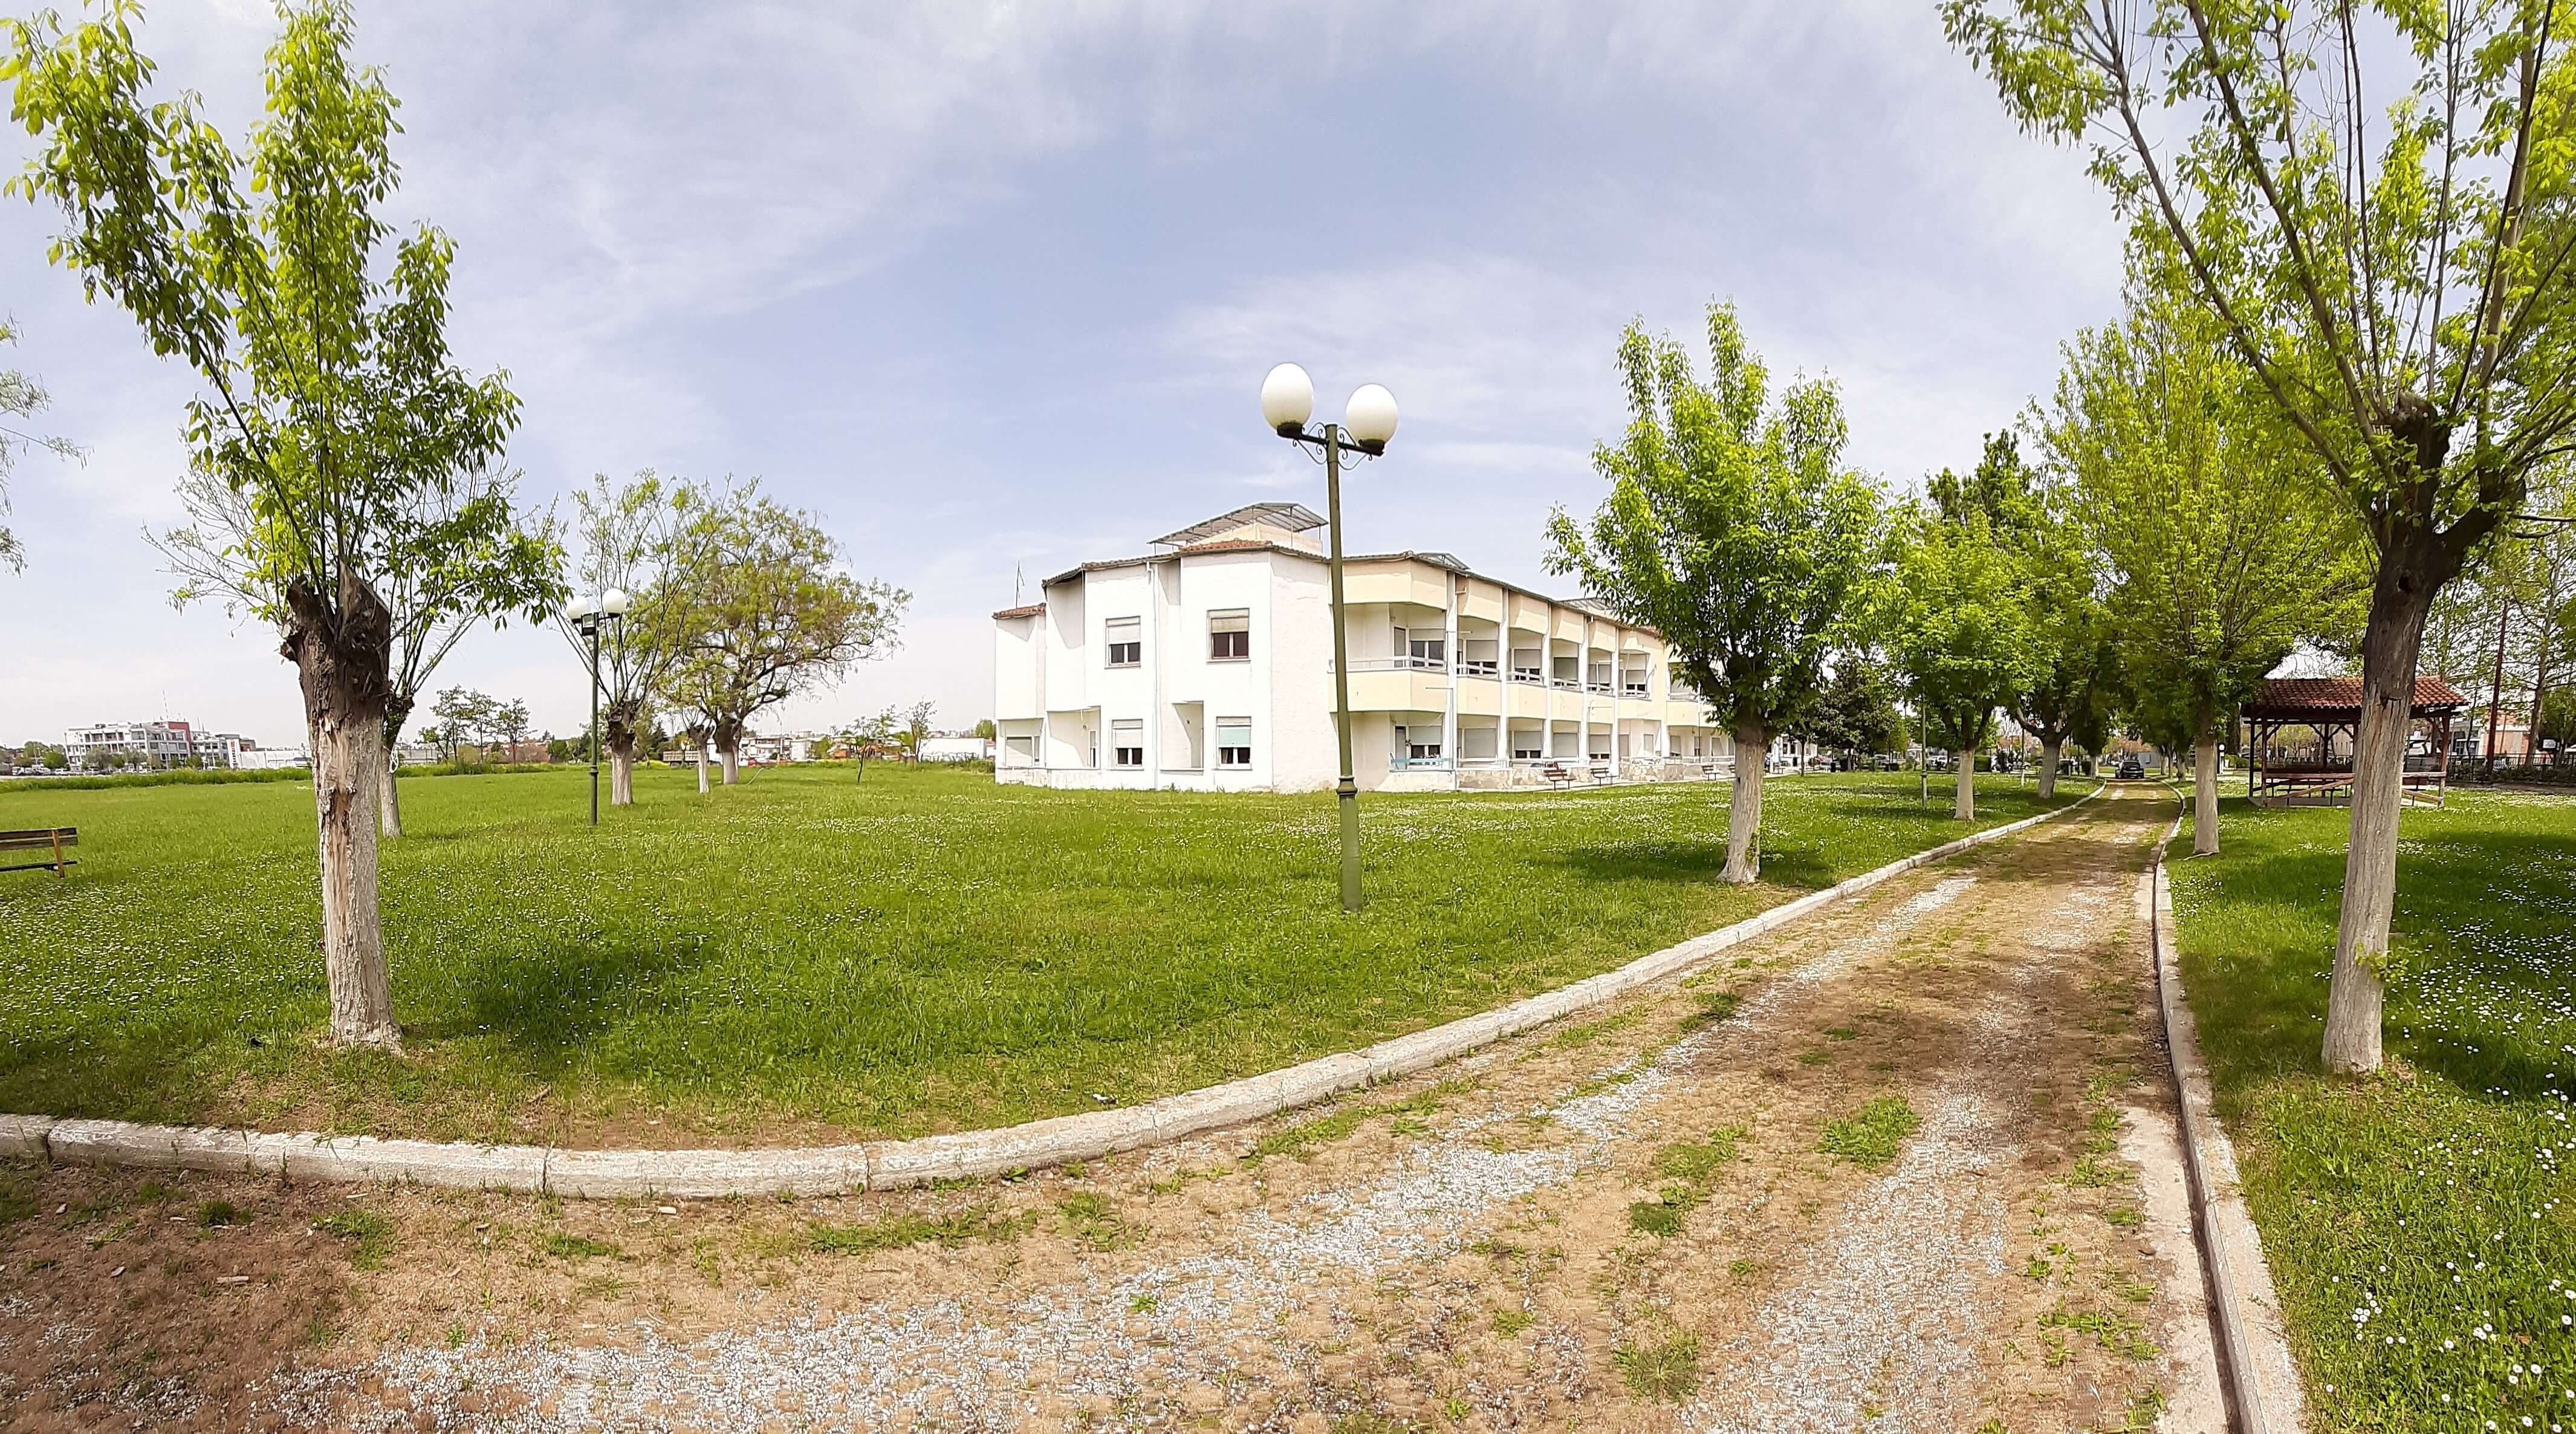 31/05/2021 - ΙΑΣΩ Θεσσαλίας: Το ΙΑΣΩ Θεσσαλίας «υιοθετεί» το Δημοτικό Γηροκομείο Λάρισας